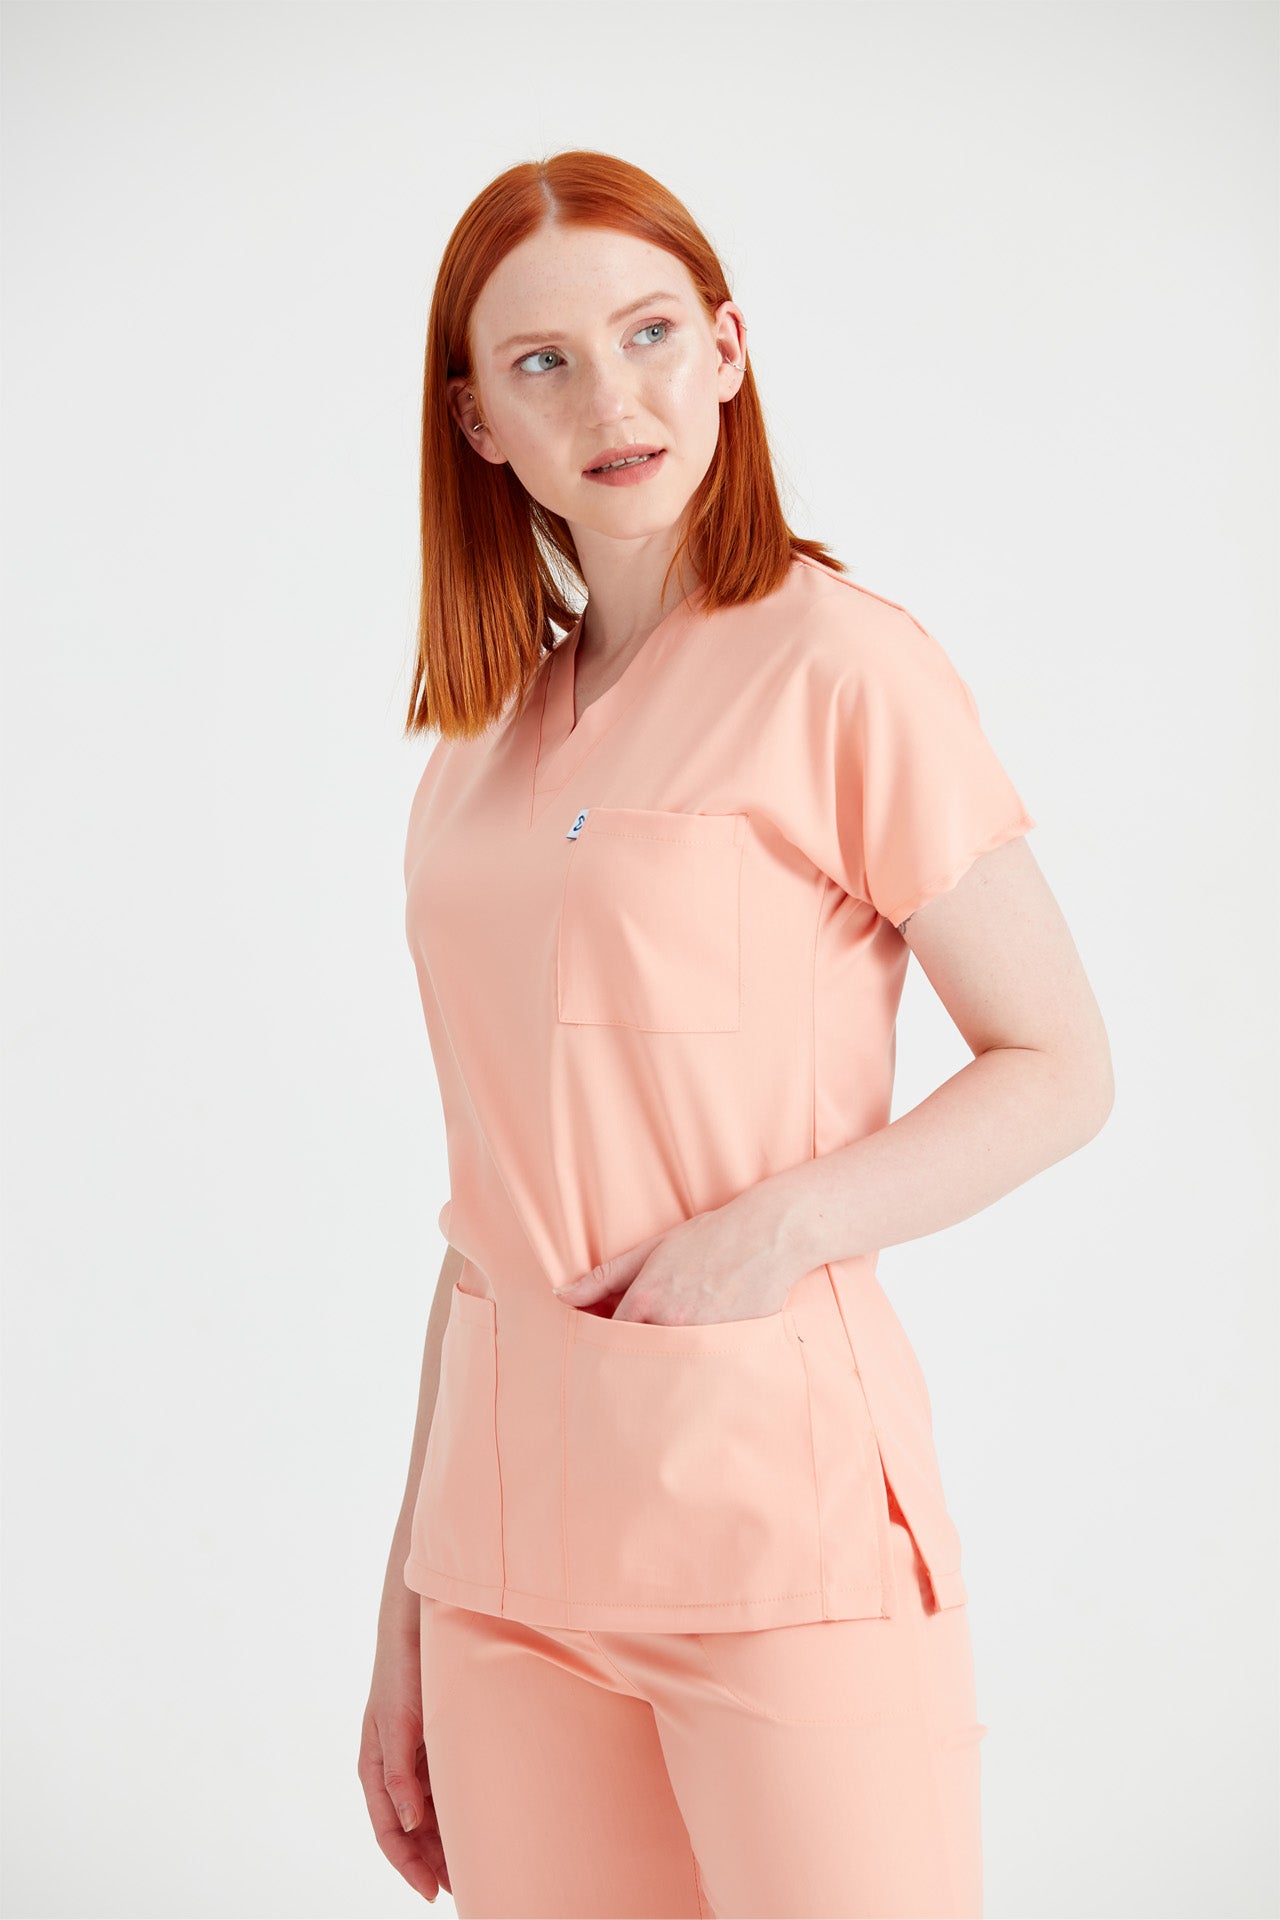 Asistenta medicala imbracata in costum clasic flex Peach, roz piersica vedere din fata